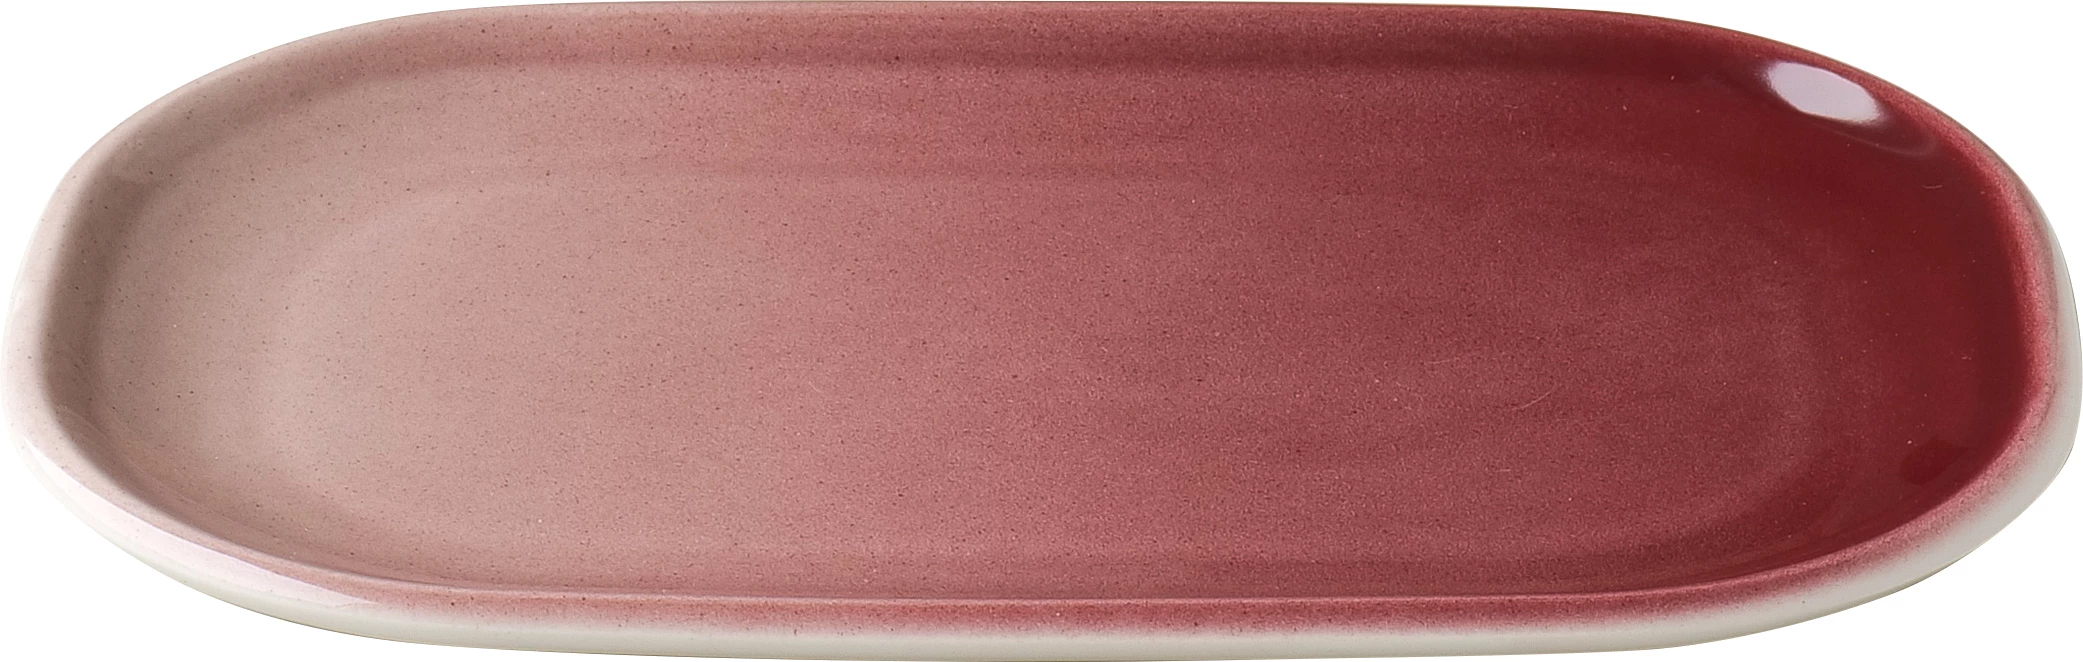 Figgjo Pax oval tallerken, rød, 20 x 13 cm